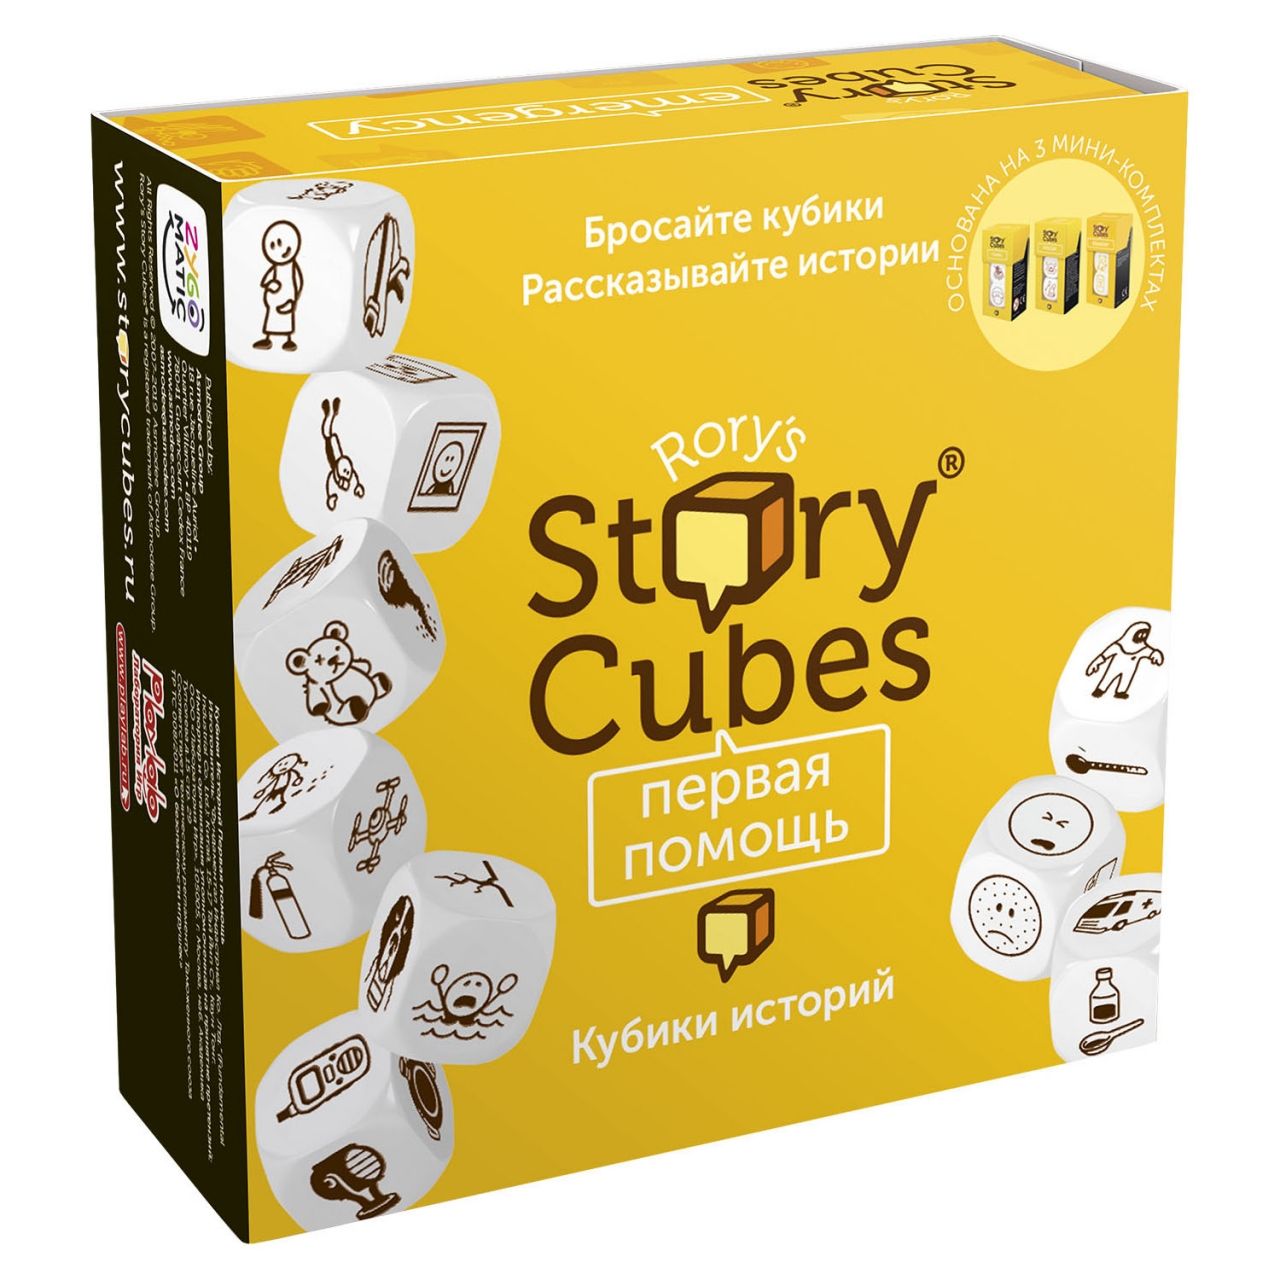 Настольная игра RORYS STORY CUBES RSC32 кубики историй Первая помощь rubiks кубики историй original